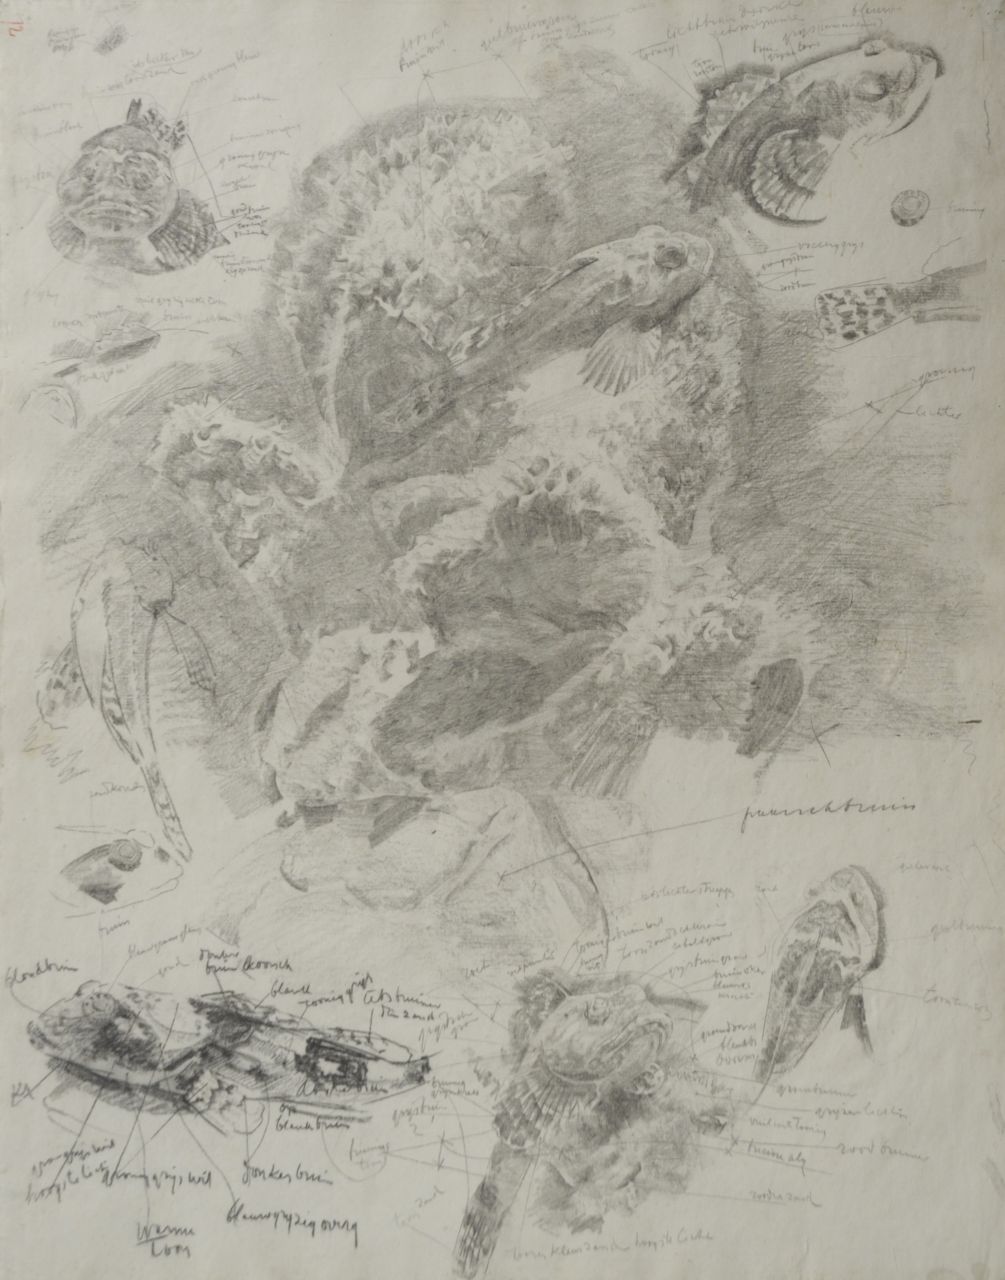 Dijsselhof G.W.  | Gerrit Willem Dijsselhof, Studie van rode ponen in aquarium, zwart krijt op papier 53,0 x 42,3 cm